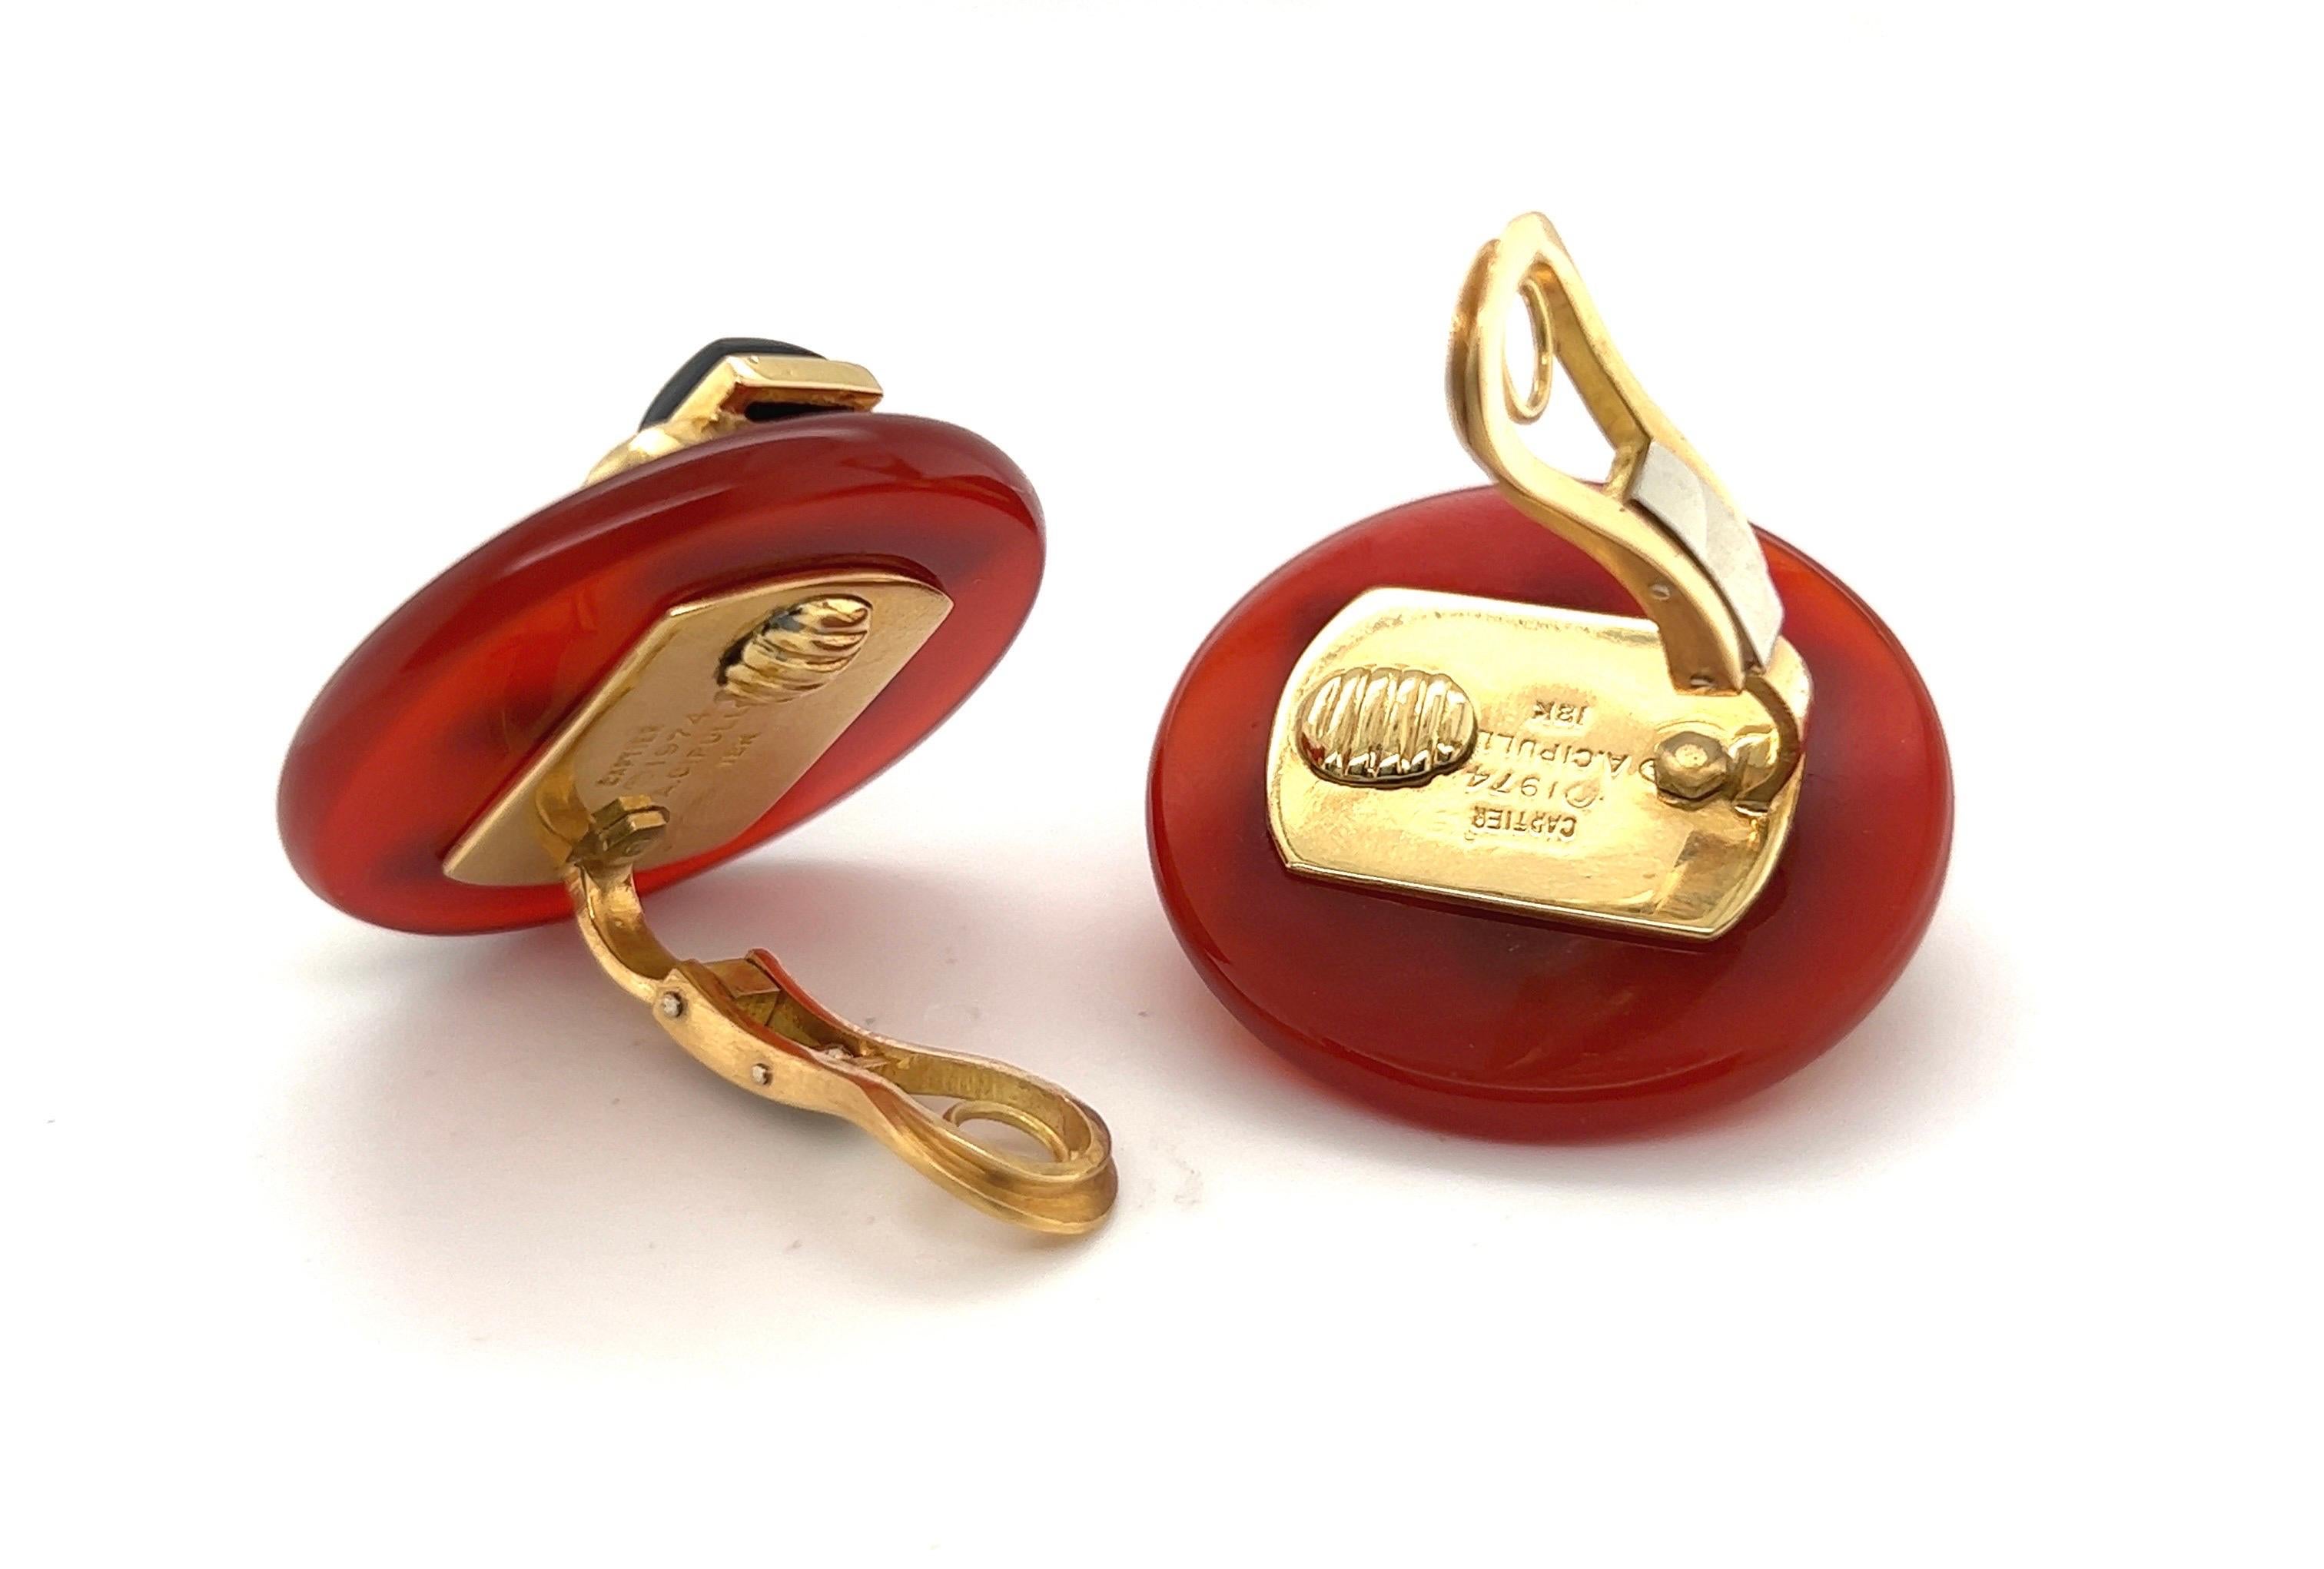 Boucles d'oreilles iconiques en or 18 carats, cornaline et onyx conçues par Aldo Cipullo pour Cartier en 1974.
Clips d'oreille de conception géométrique, chacun composé d'un disque de cornaline rouge profond décoré d'un trio de cabochons en forme de